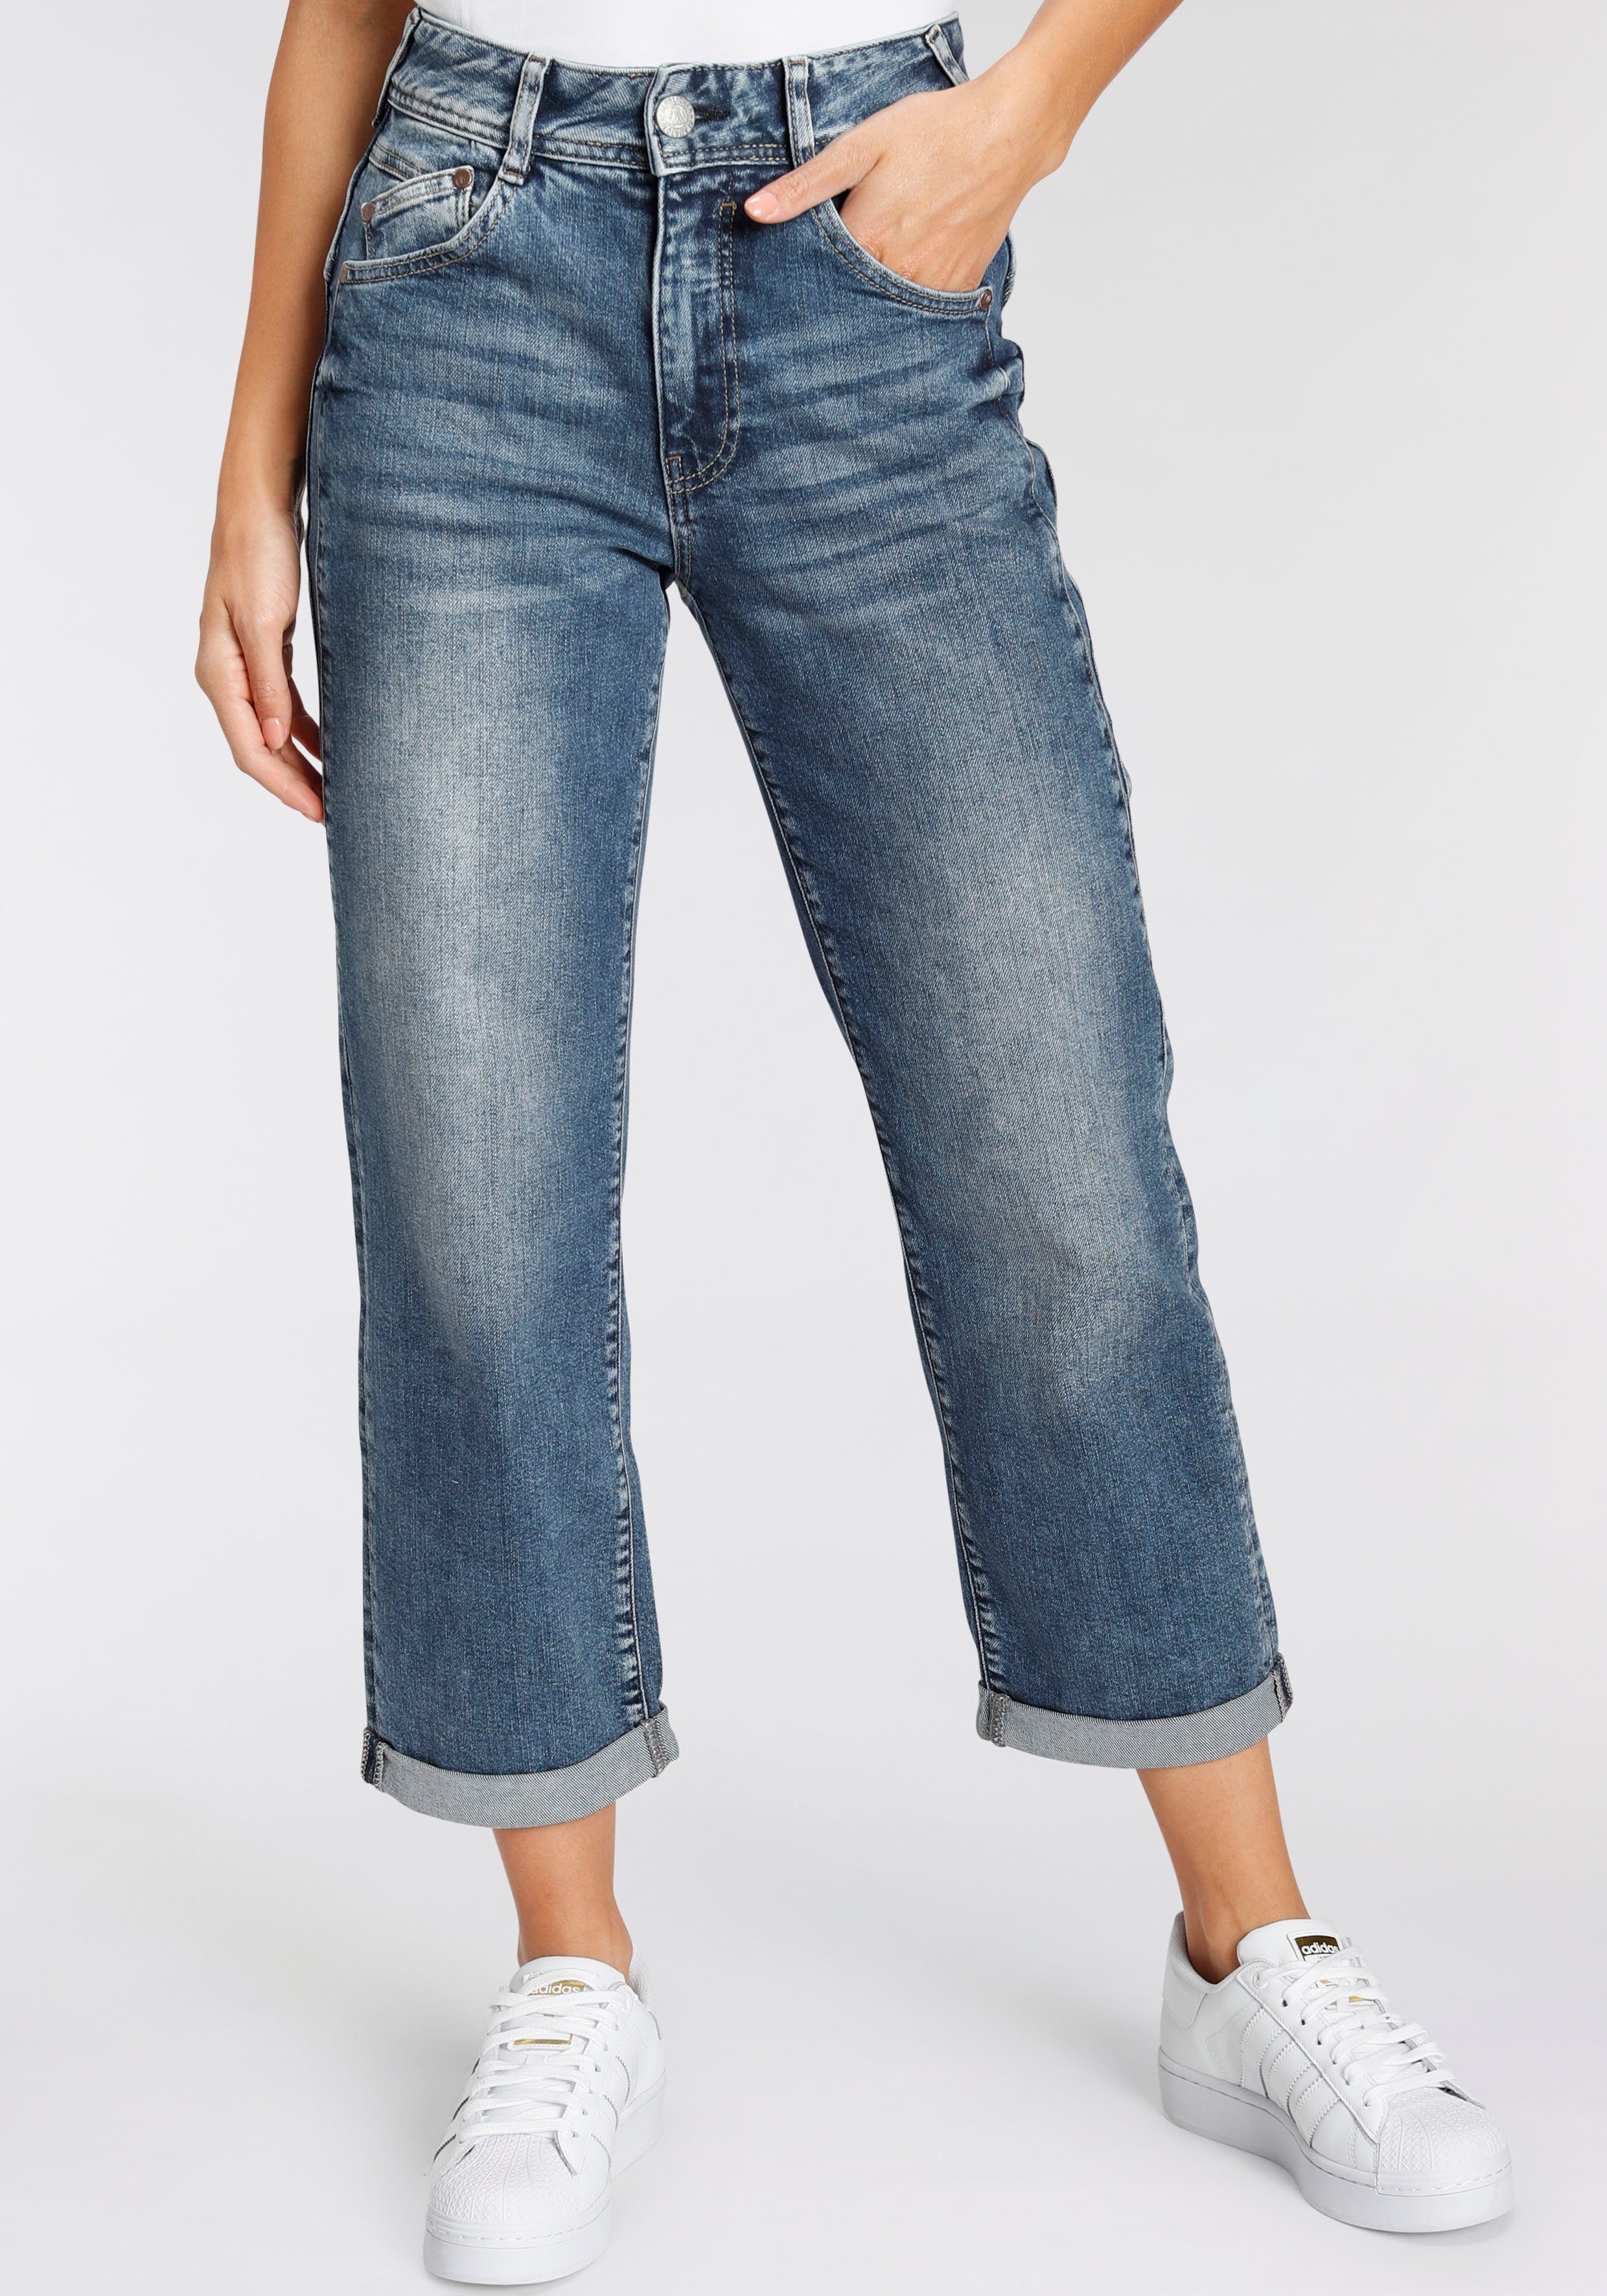 Herrlicher High-waist-Jeans GILA HI TAP Pre-Consumer Recycled Cotton,  Tiefsitzende asymmetrische Gesäßtaschen sorgen für einen leichten  Push-up-Effekt